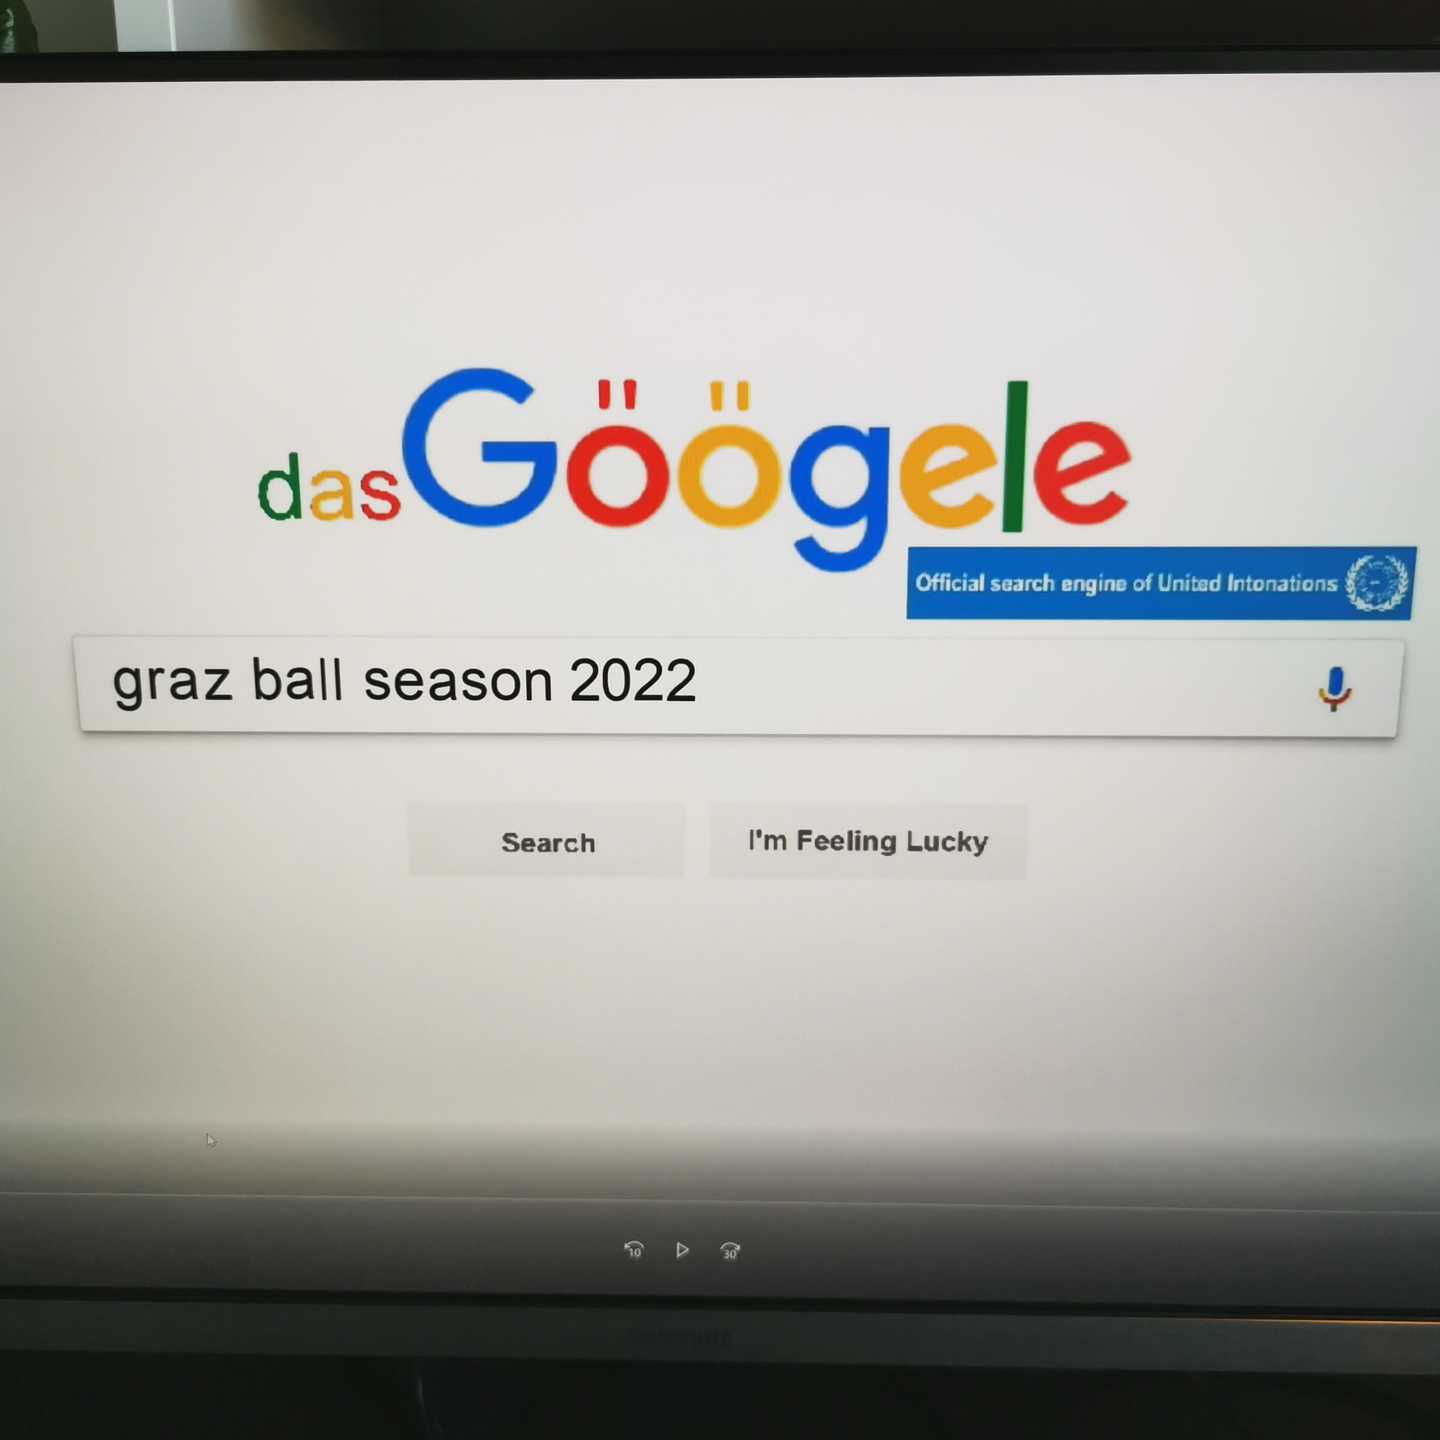 Ball season 2022